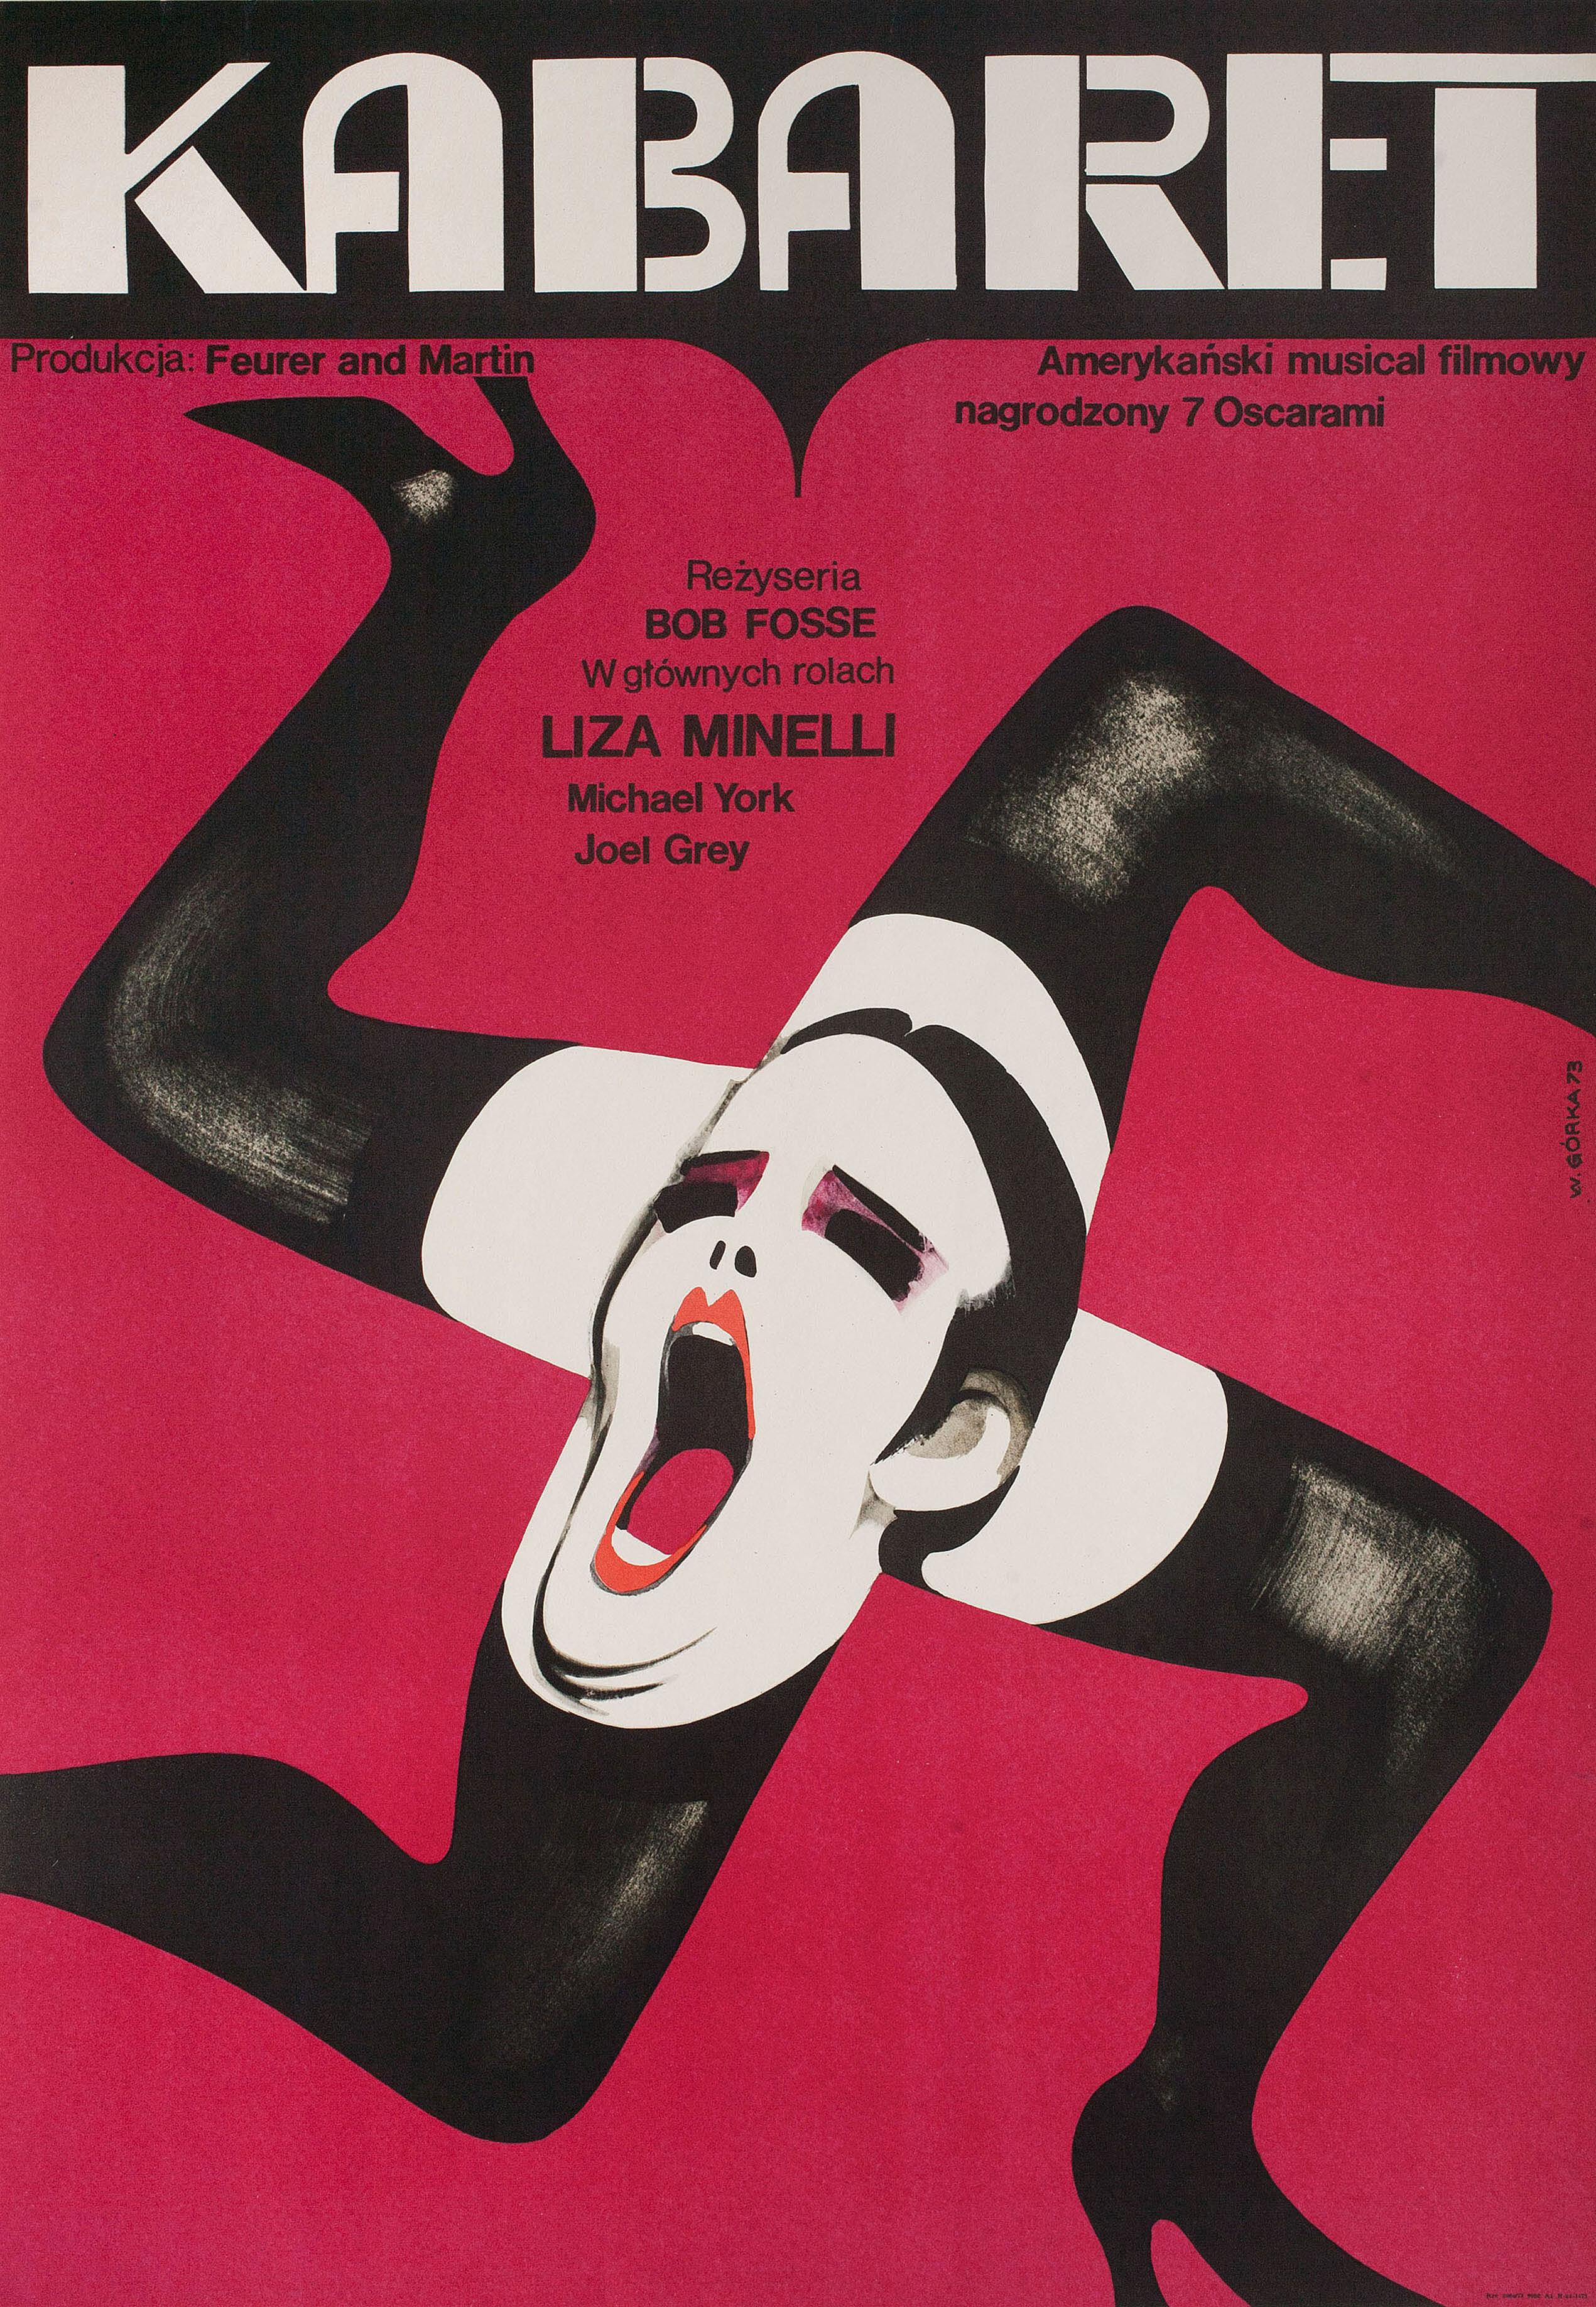 Кабаре (Cabaret, 1972), режиссёр Боб Фосс, польский плакат к фильму, 1973 год, автор Виктор Горка